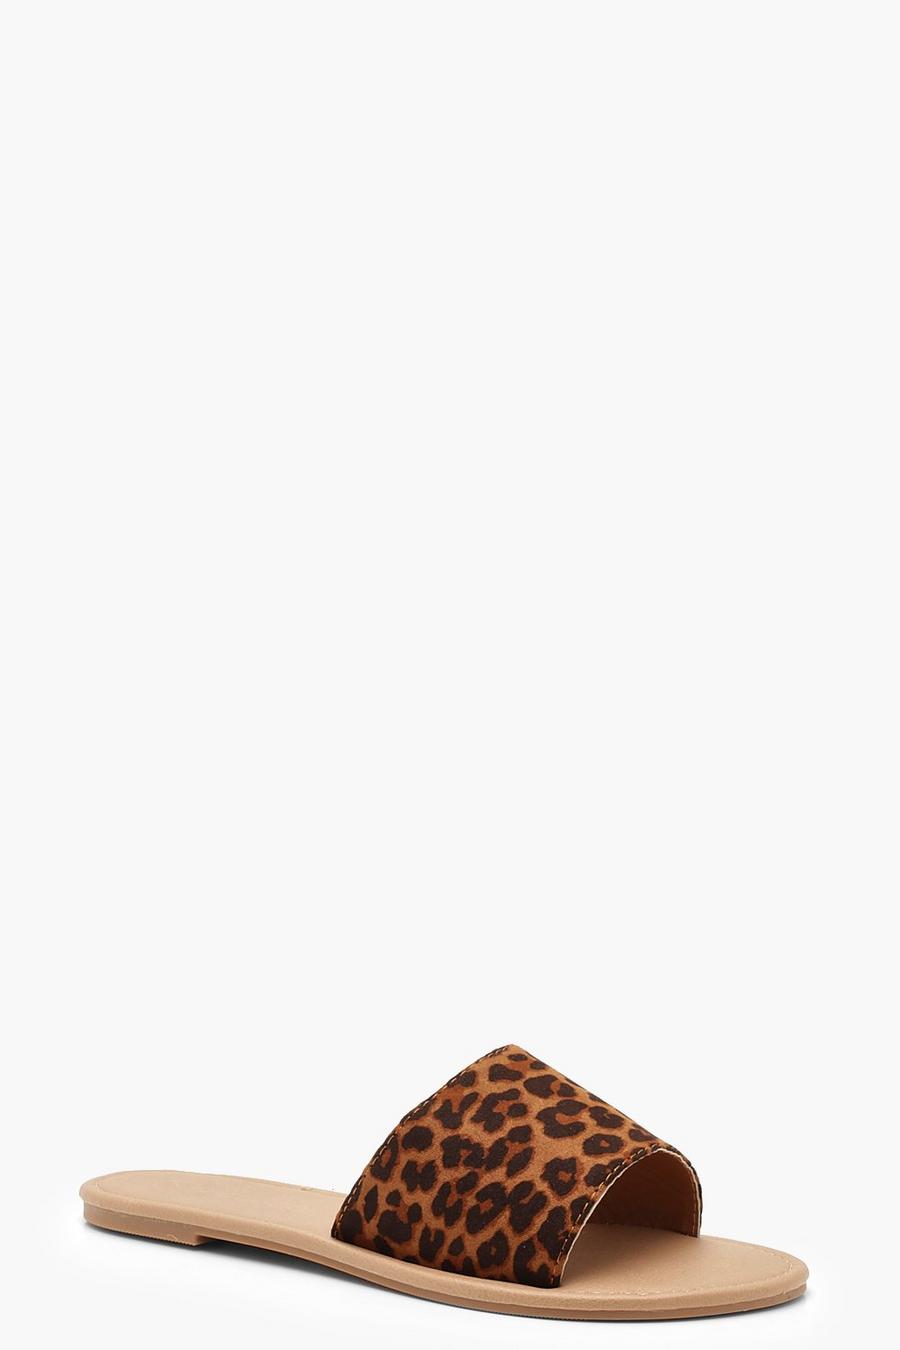 Luipaard mehrfarbig Basic Luipaardprint Slippers